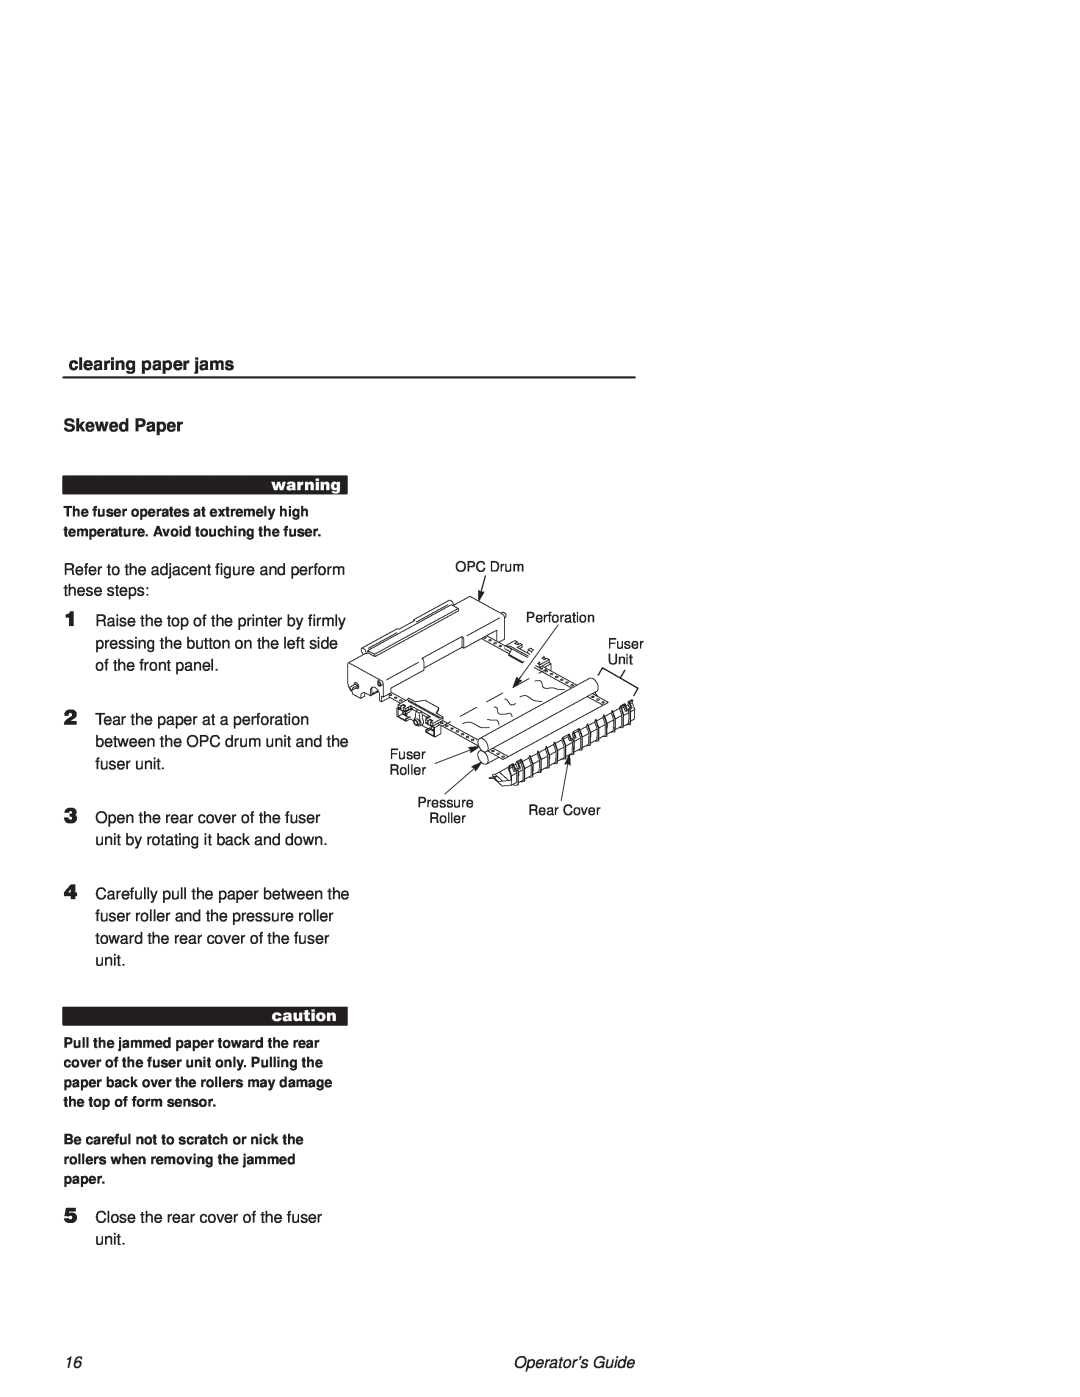 Printronix L1524 manual clearing paper jams, Skewed Paper 